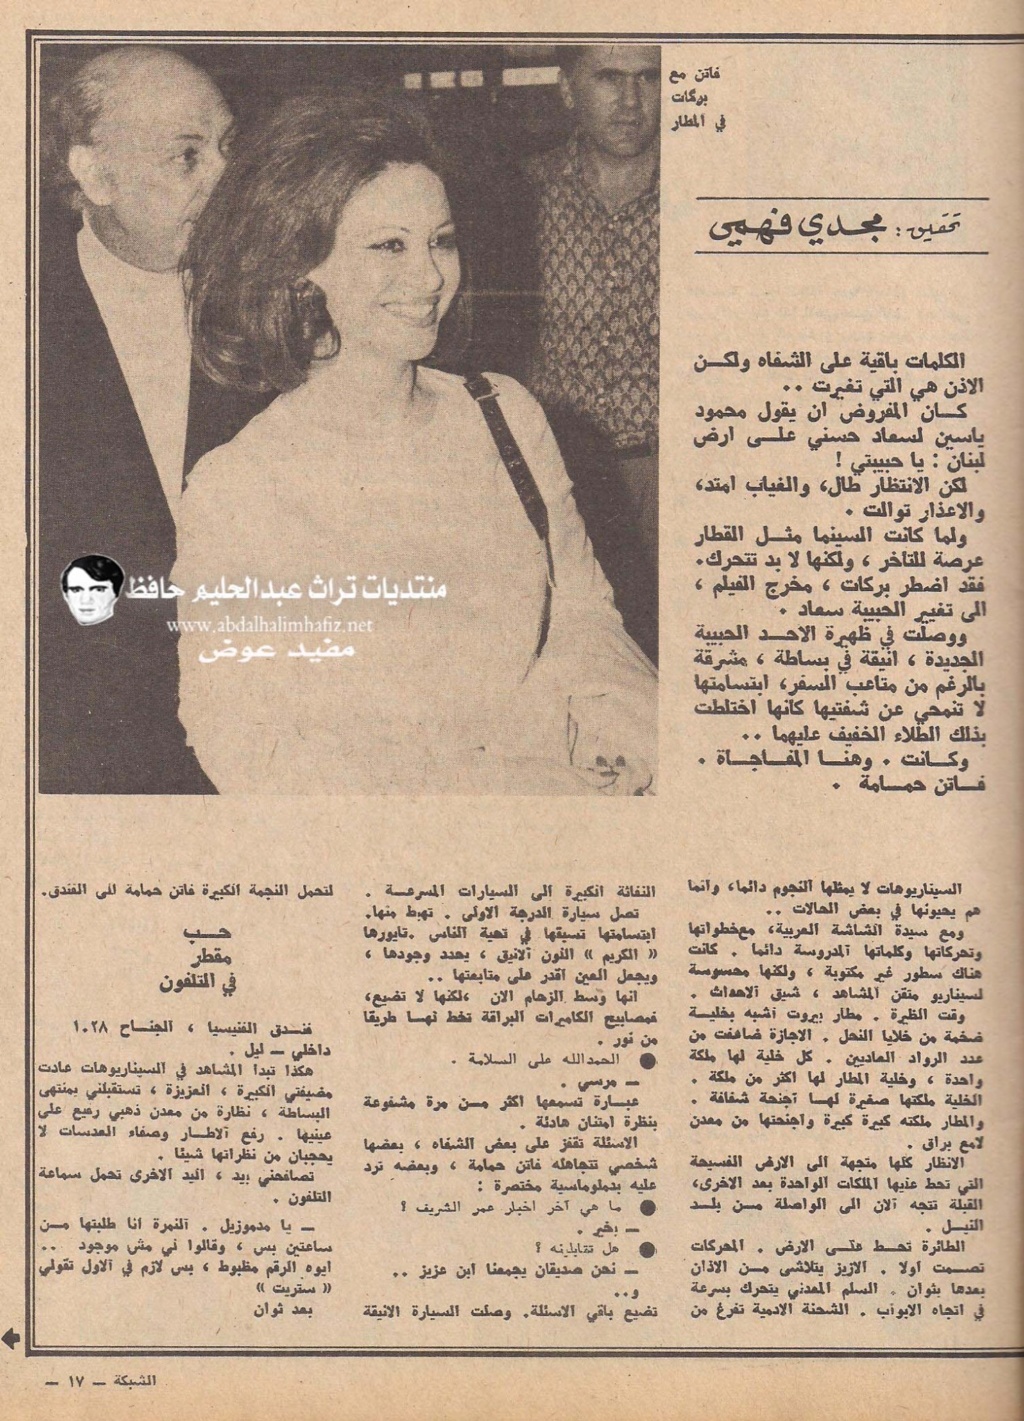 مقال - مقال صحفي : فاتن حمامة حبيبة في لبنان بدلا من سعاد حسني 1972 م 2174